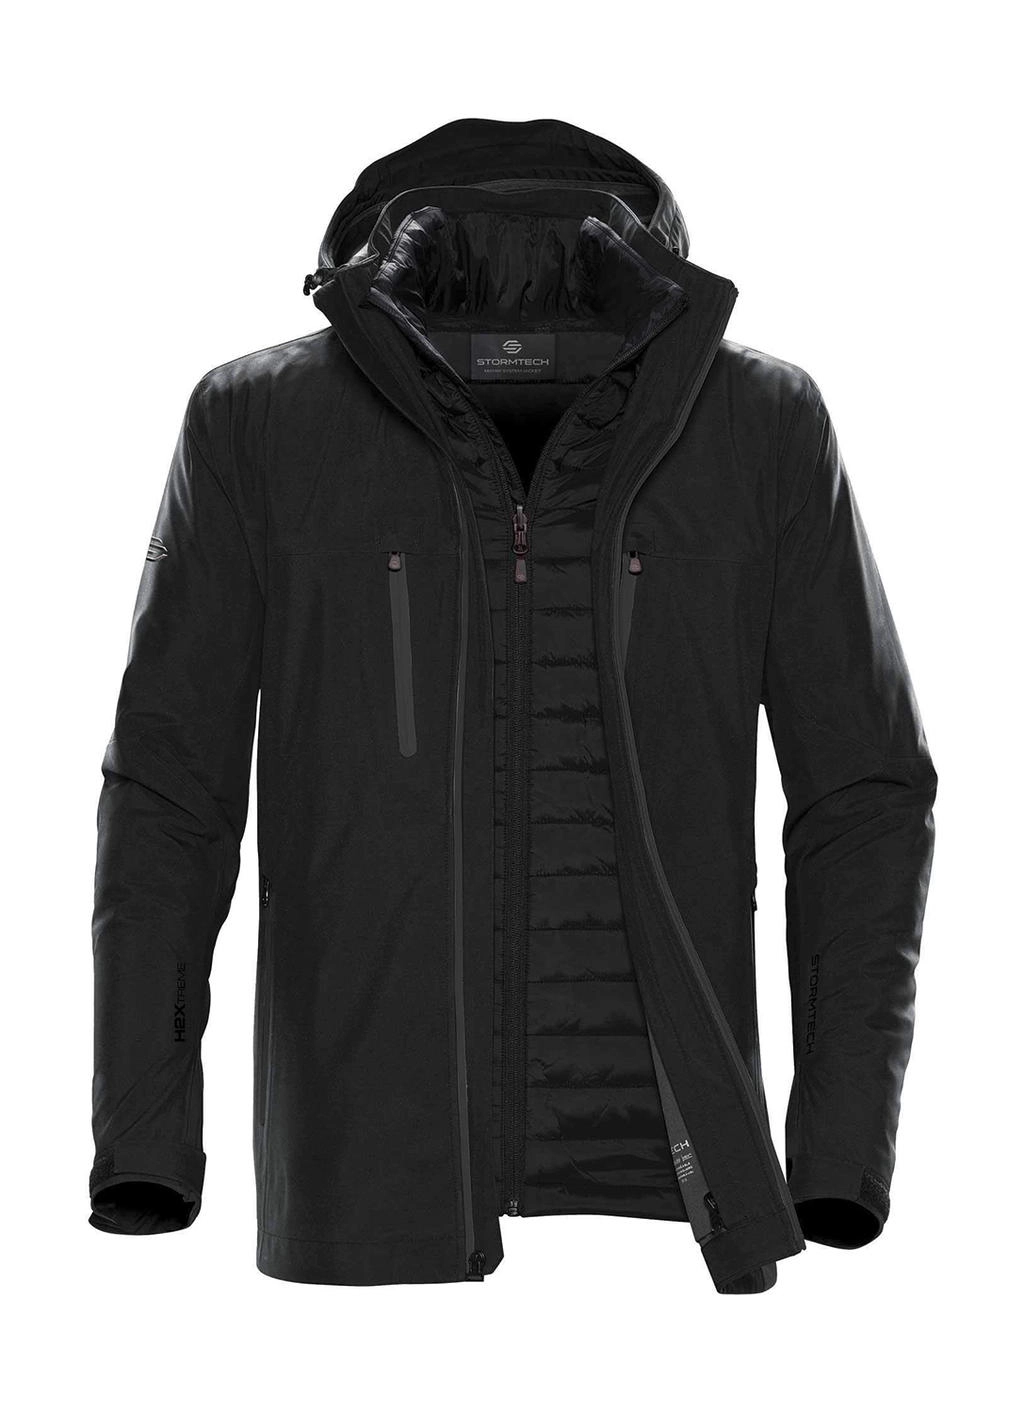 Men`s Matrix System Jacket zum Besticken und Bedrucken in der Farbe Black/Carbon mit Ihren Logo, Schriftzug oder Motiv.